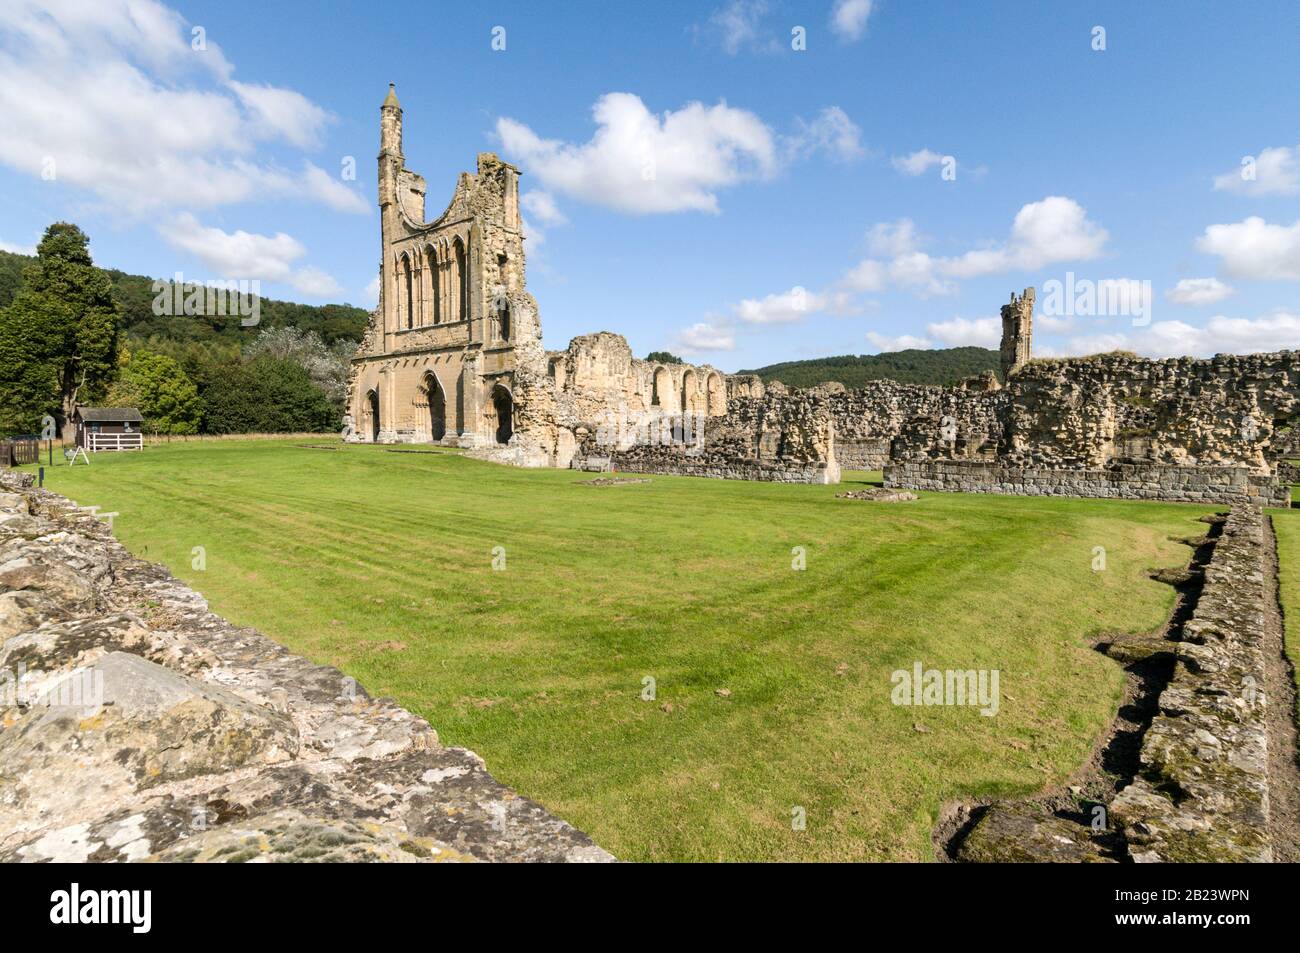 Les ruines de l'abbaye de Byland au bord de la partie sud du parc national des Maures de North York près de la ville de Thirsk dans le Yorkshire du Nord en Grande-Bretagne Banque D'Images